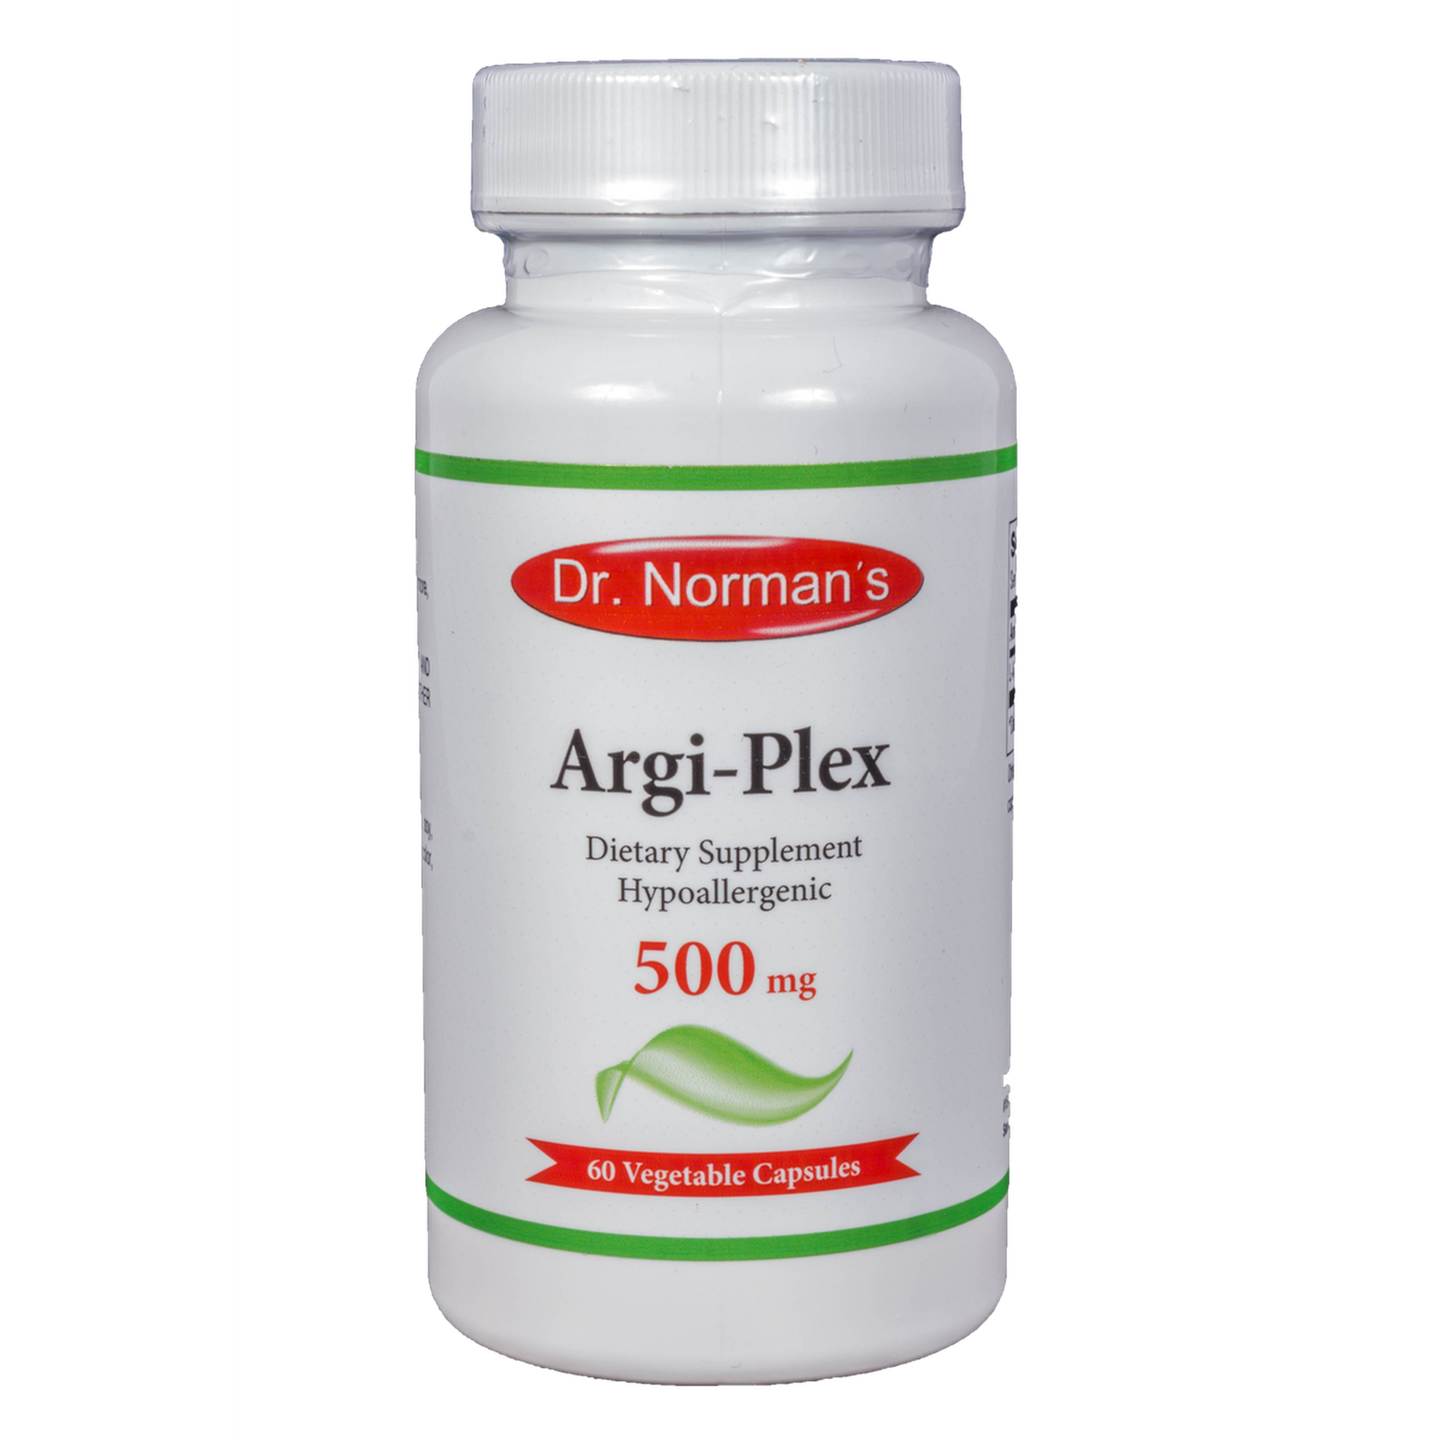 Dr. Norman's Argi-Plex